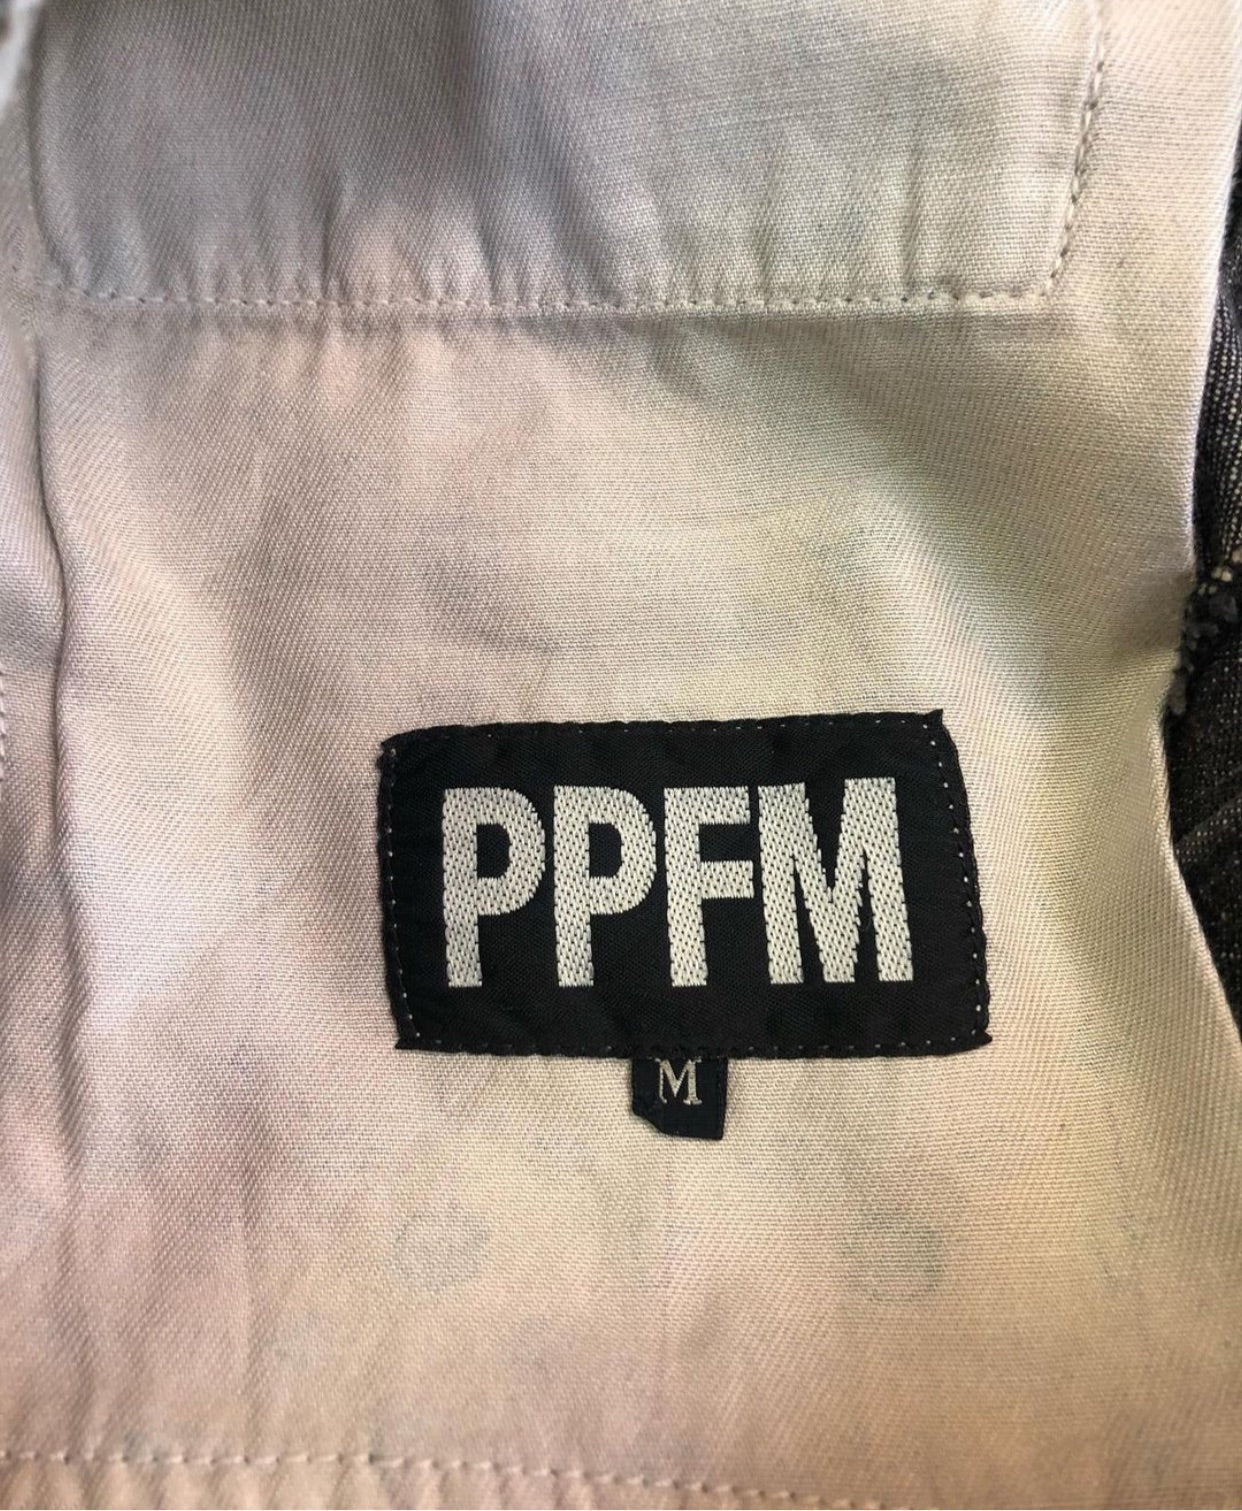 PPFM 20th Anniversary Prisoner Denim – rwndbckwrds